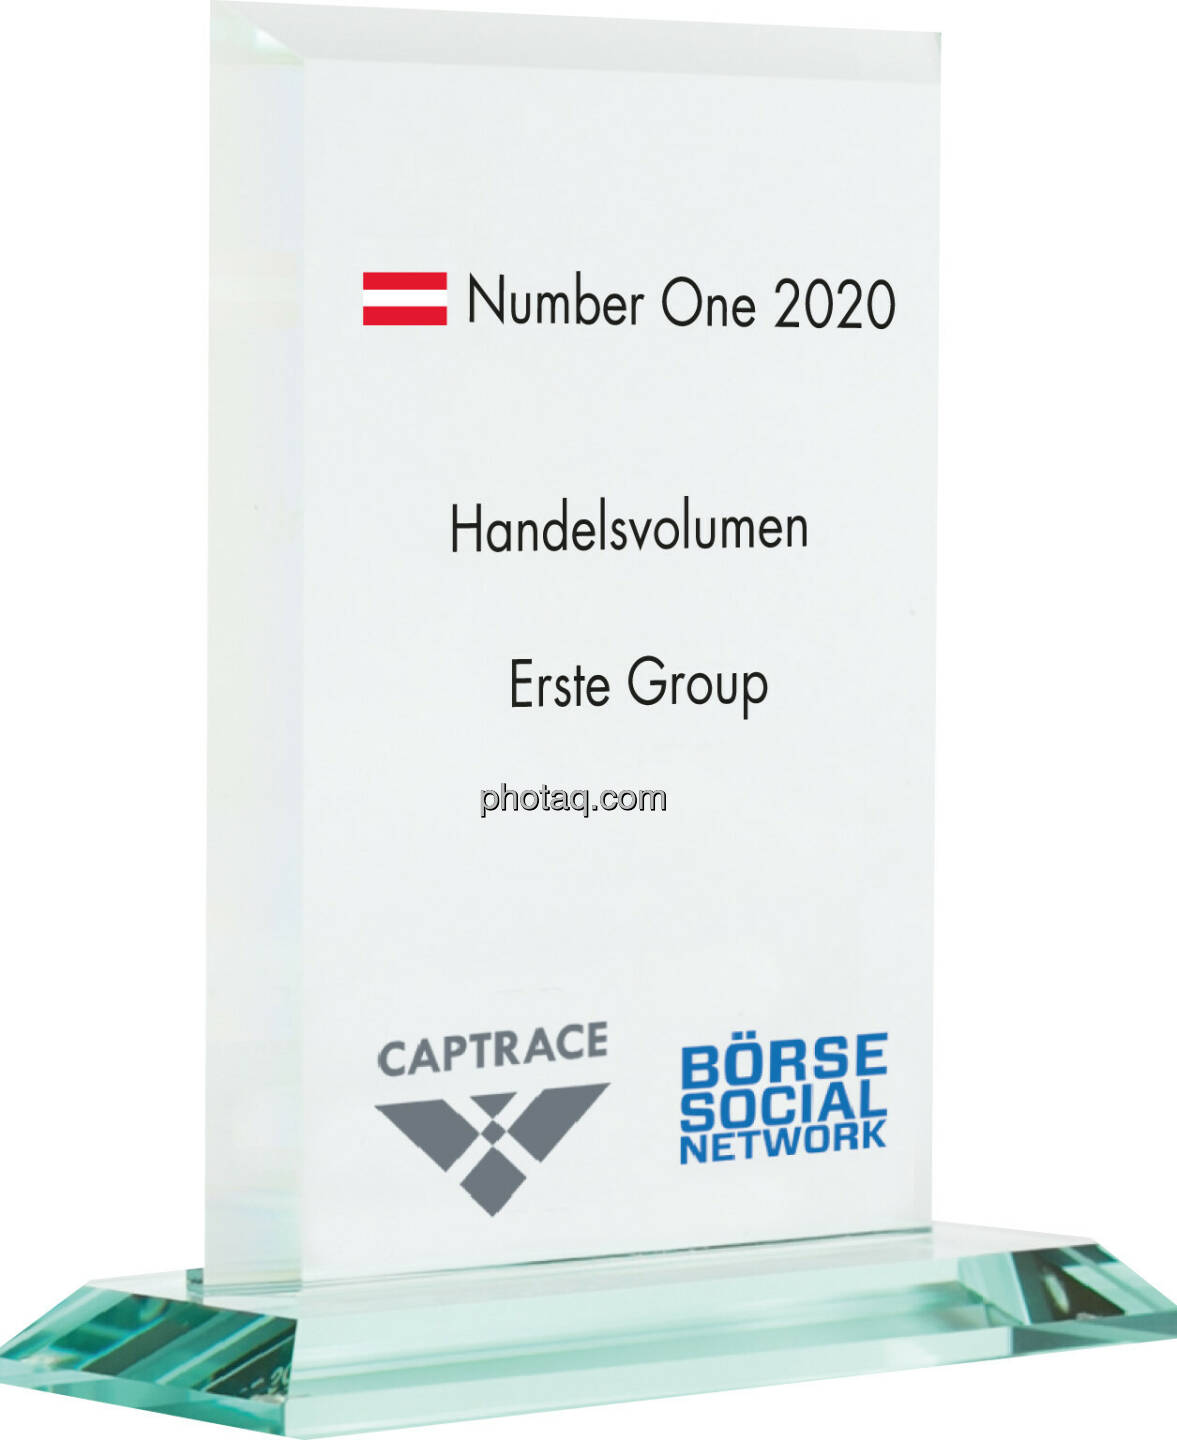 Number One Awards 2020 - Handelsvolumen Erste Group